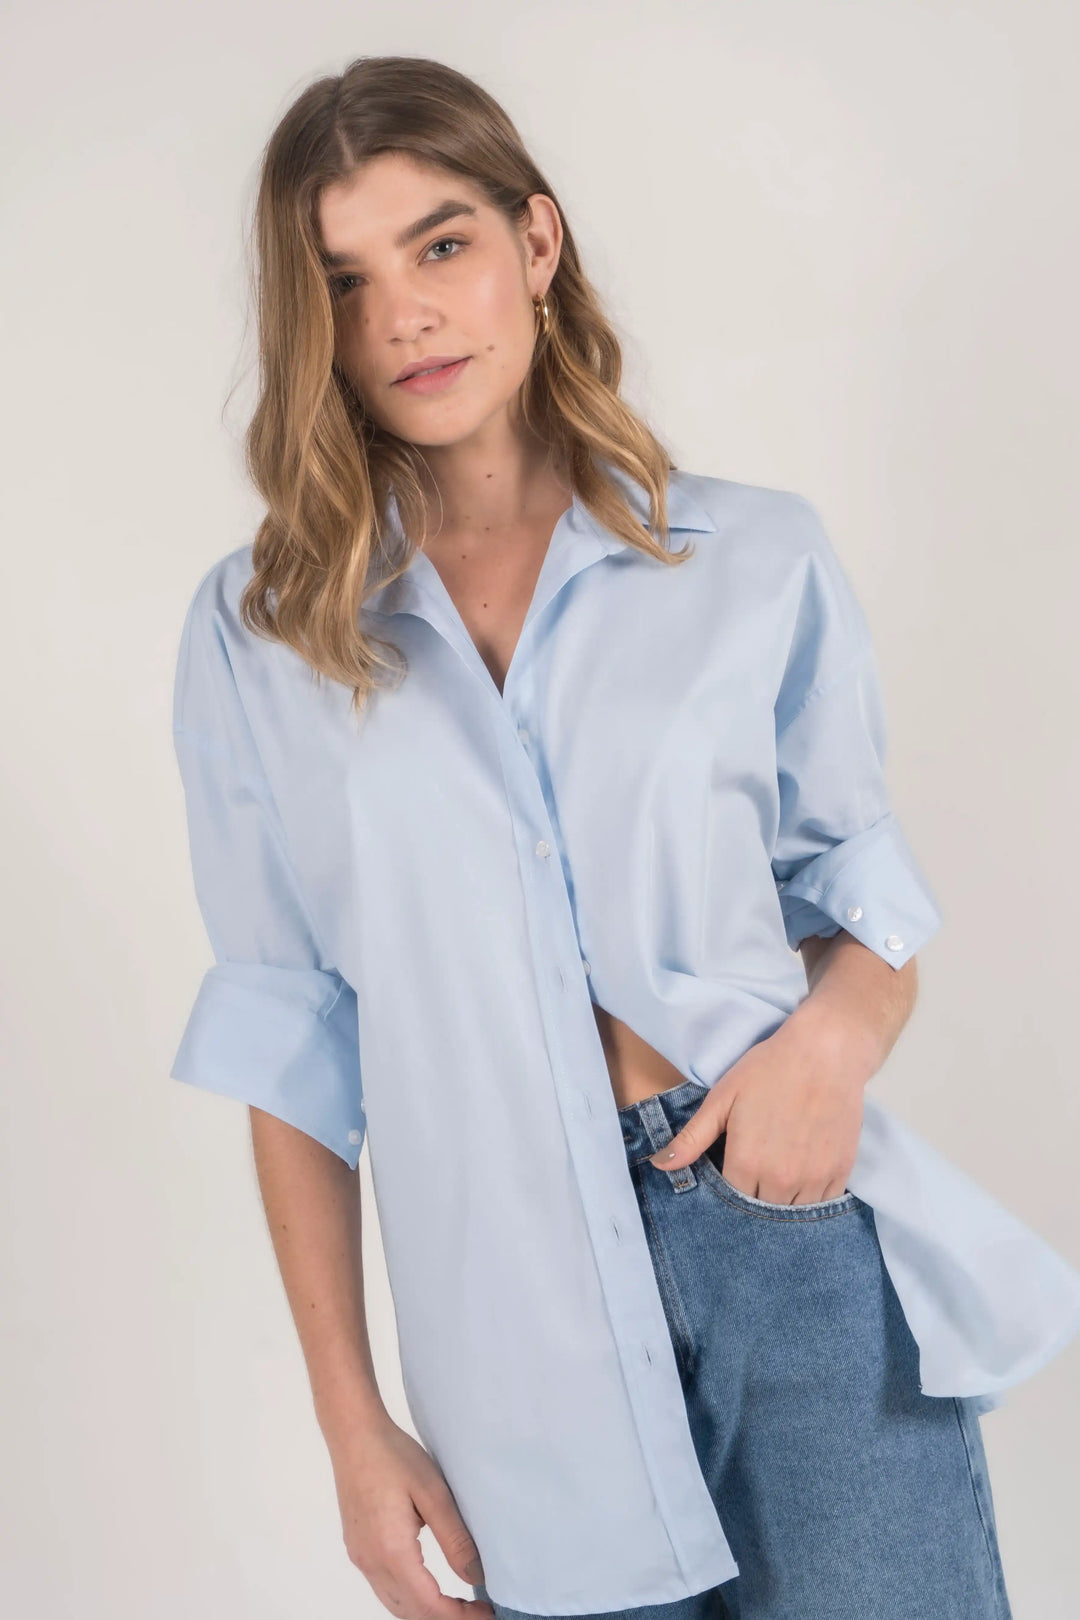 Camisa oversized para mujer, algodón Popelina, color azul claro